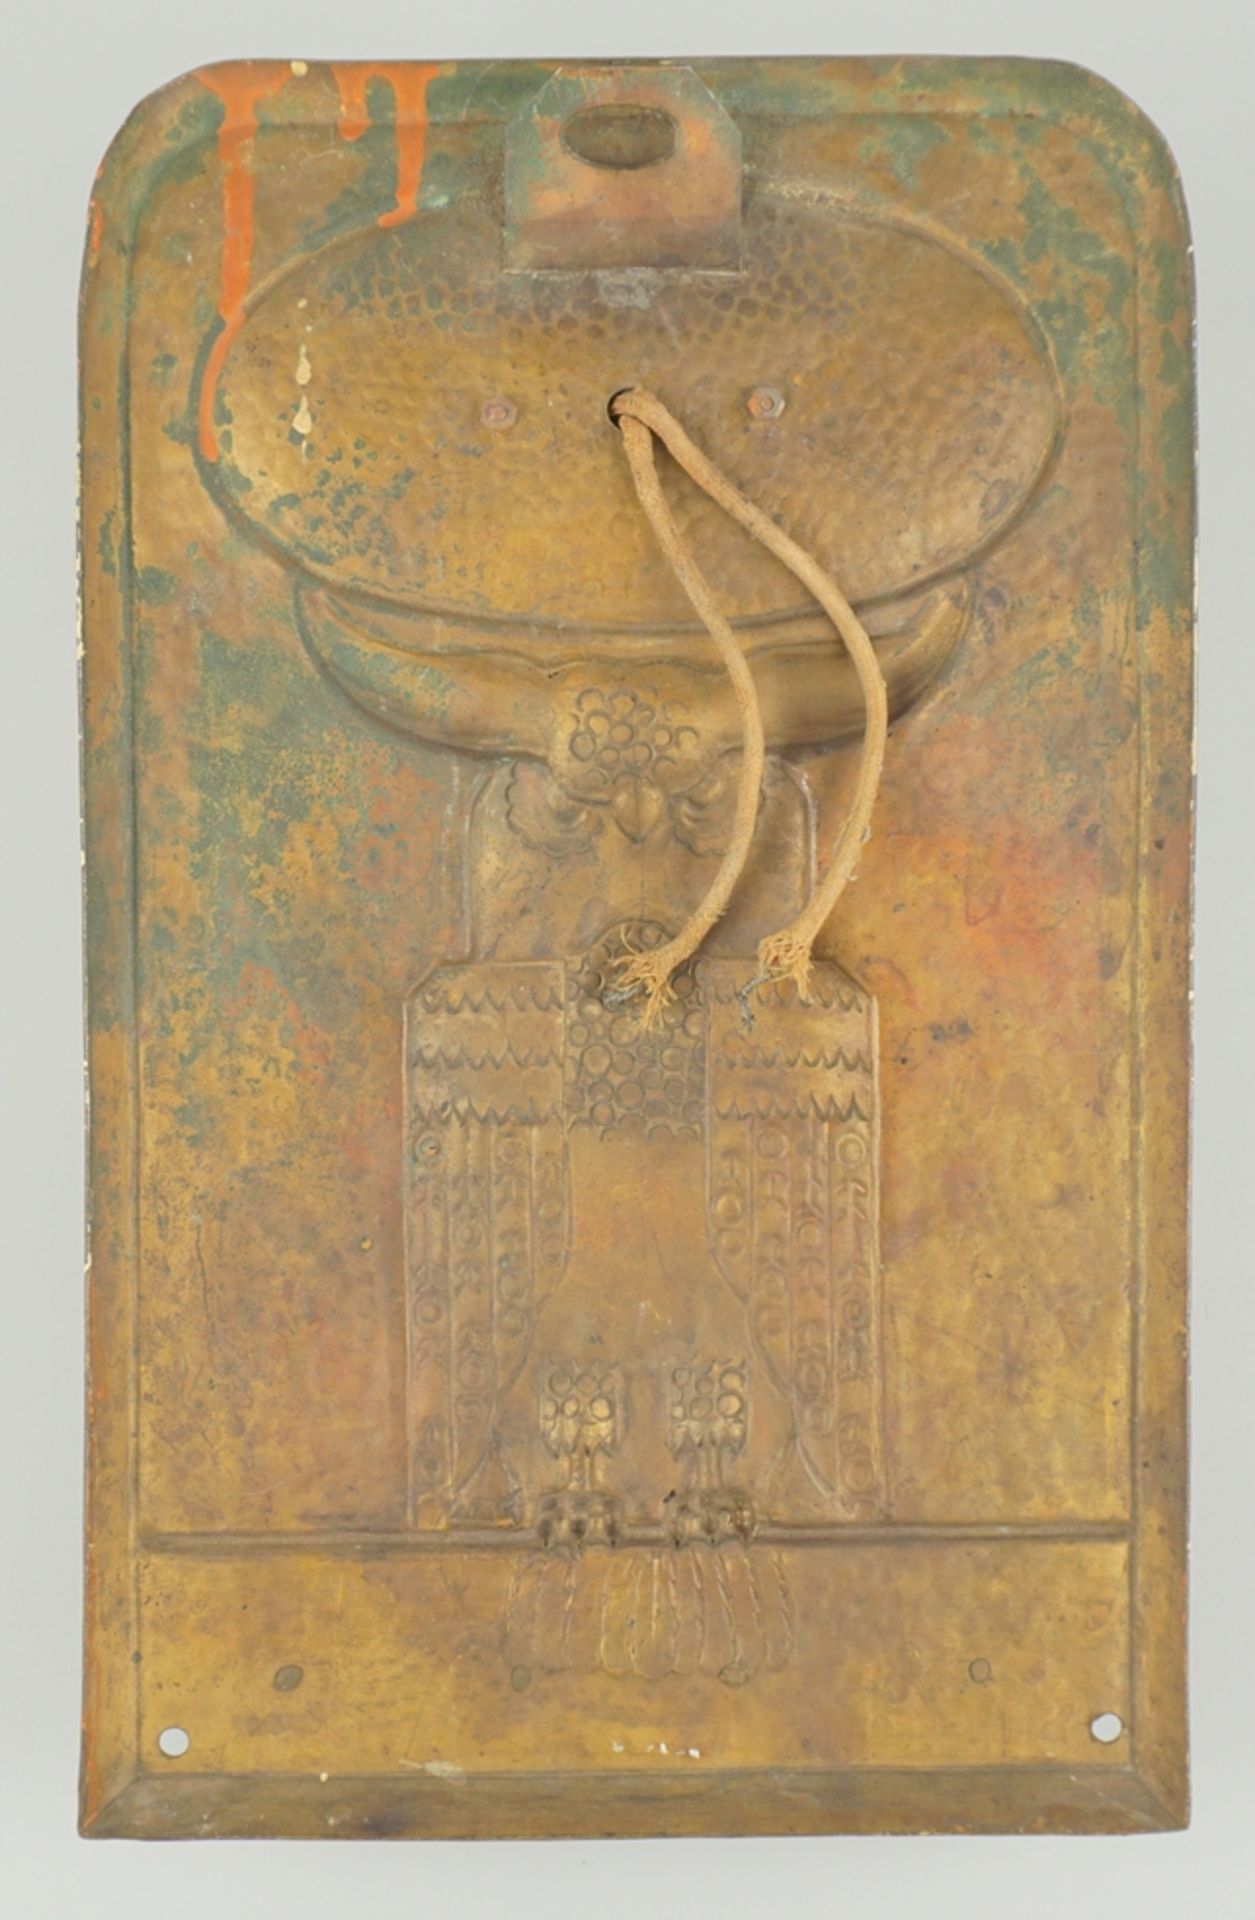 Wandlampe mit Uhu-Motiv im Relief, Art déco, 1920er Jahre - Image 2 of 2